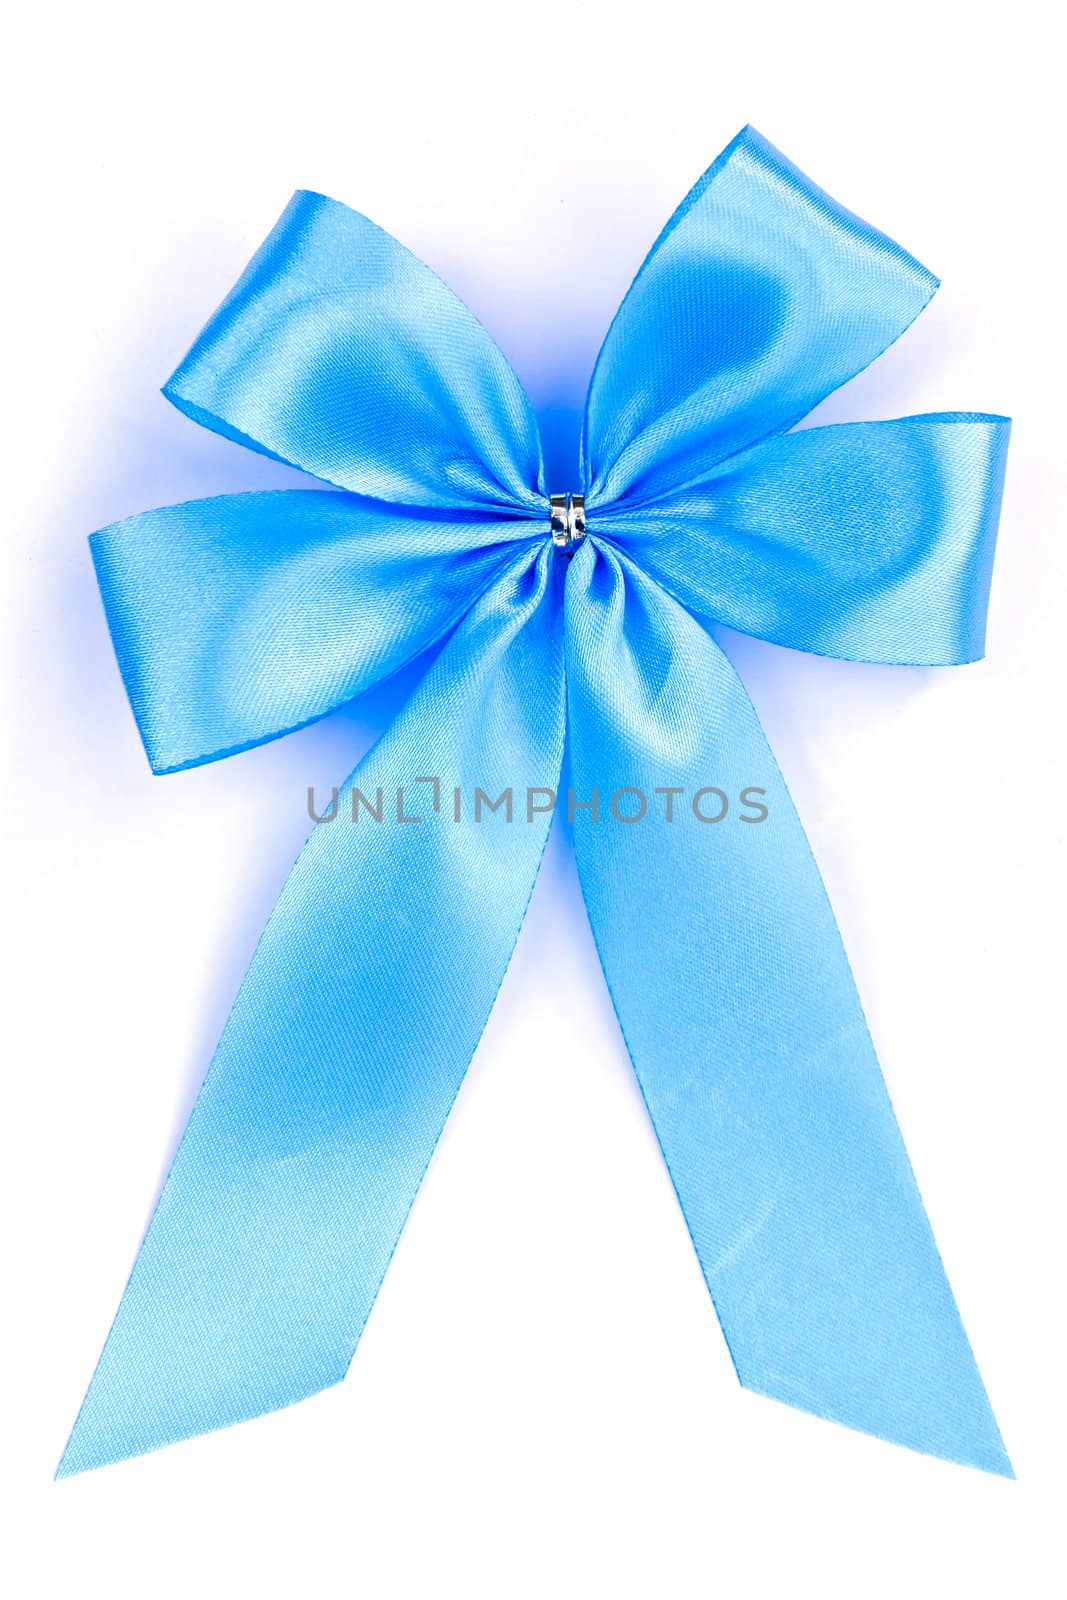 blue ribbon isolated on white background